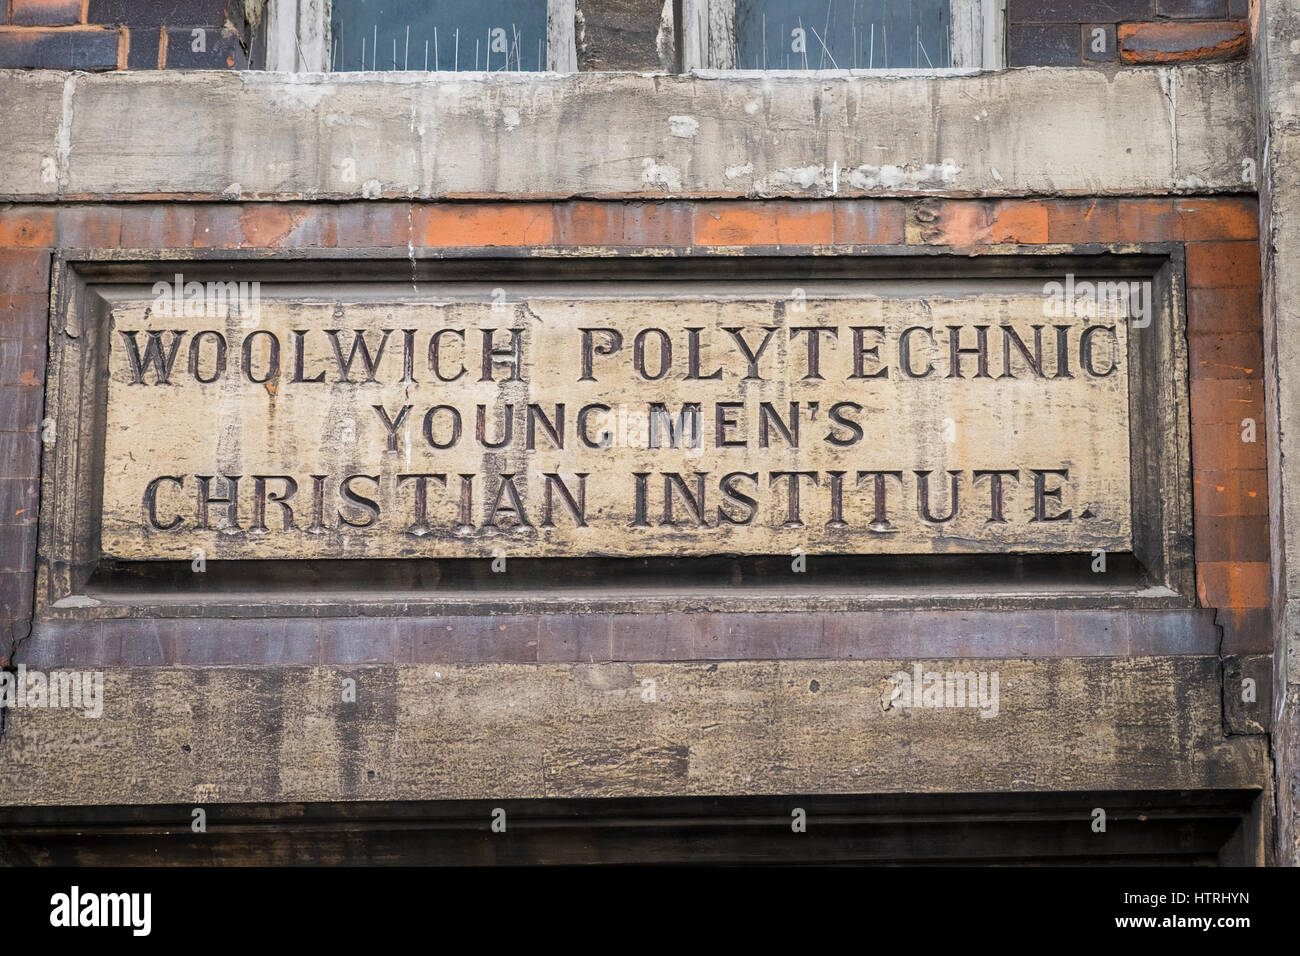 Woolwich Polytechnic Young Men's Christian Institute signe sur l'extérieur de l'immeuble, centre-ville, à Woolwich, Londres, Angleterre, Royaume-Uni Banque D'Images